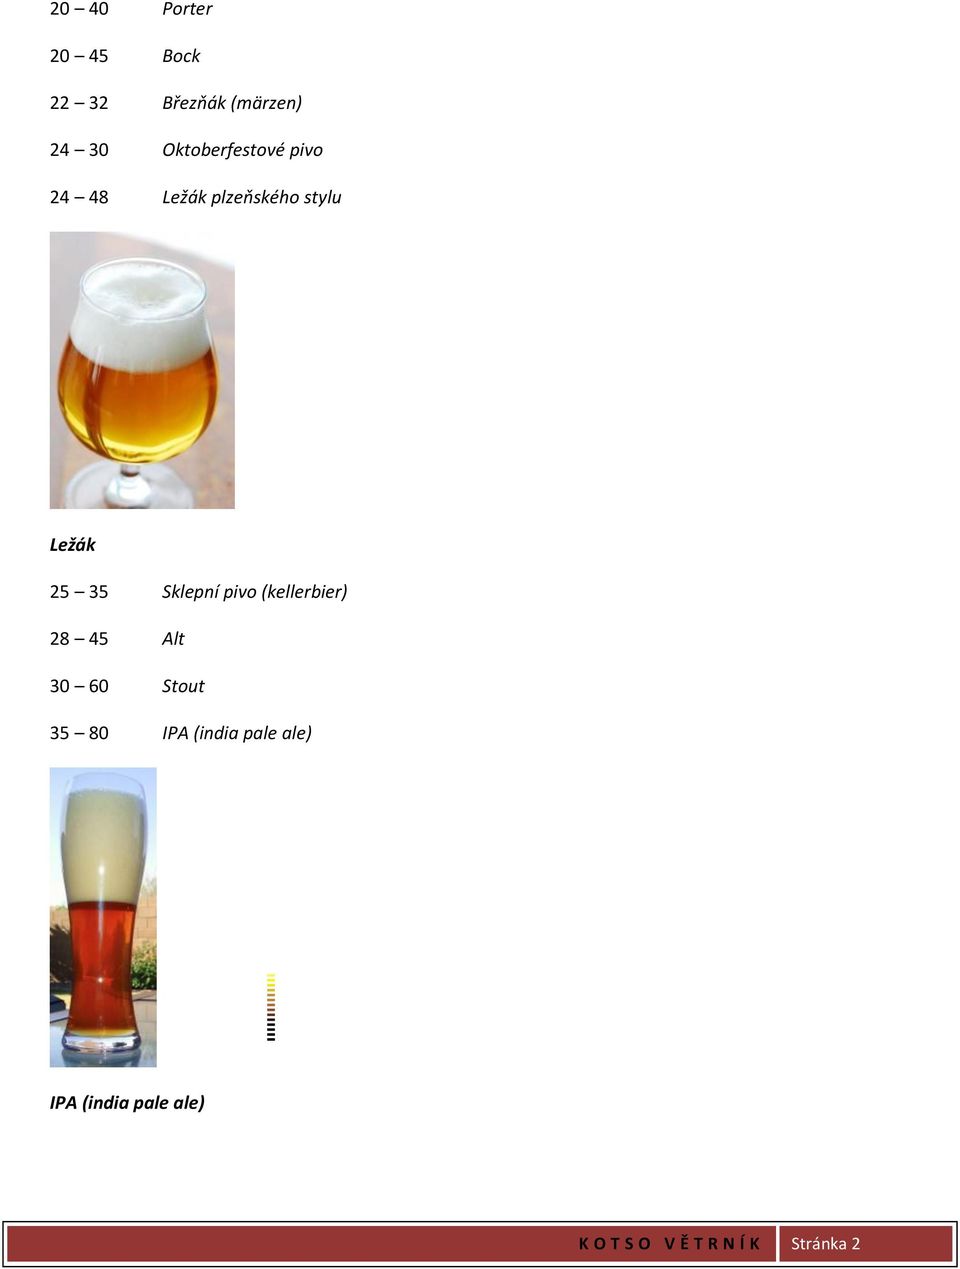 Sklepní pivo (kellerbier) 28 45 Alt 30 60 Stout 35 80 IPA